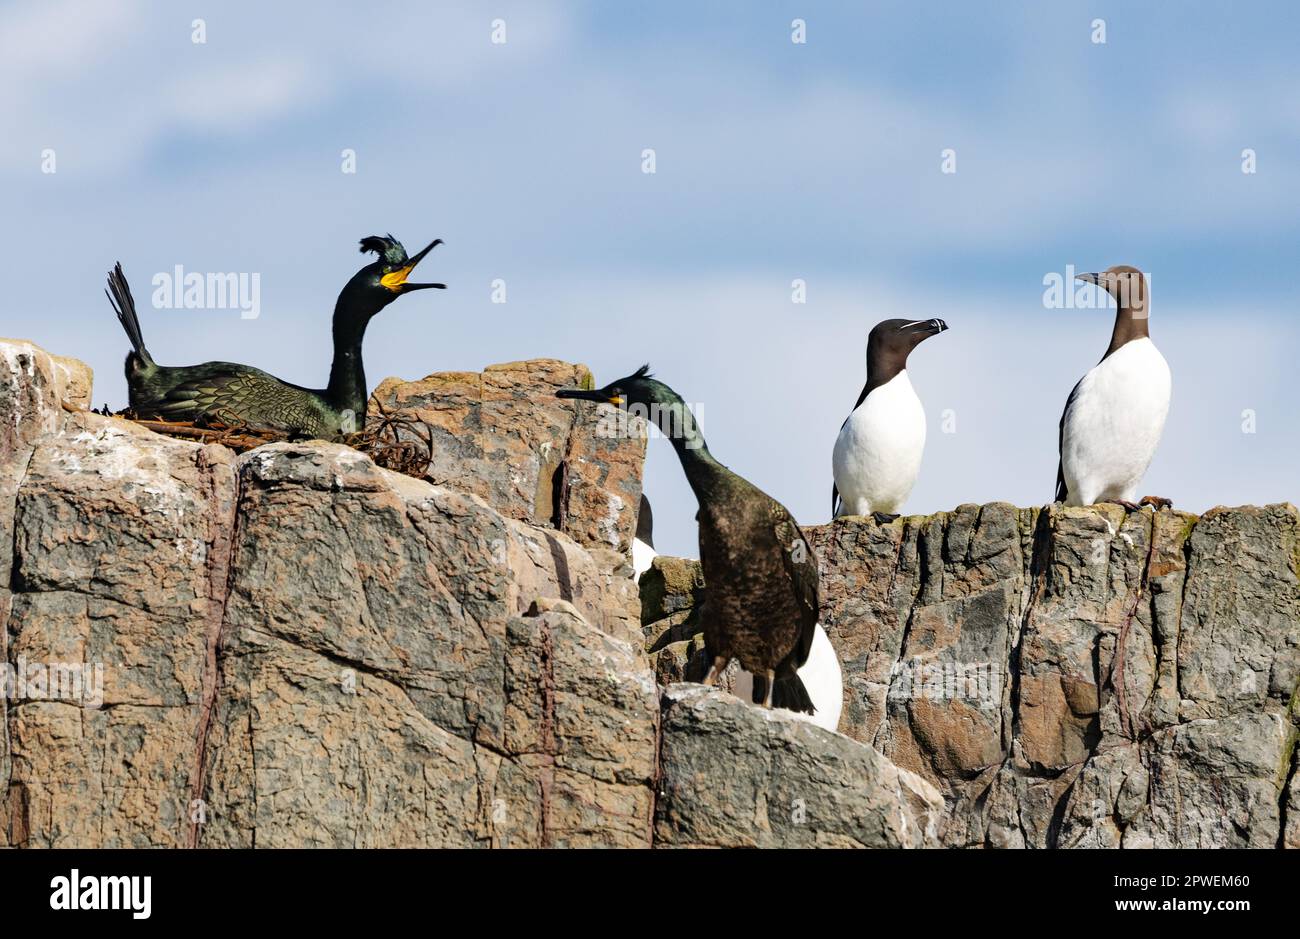 Uccelli britannici - uccelli britannici; Isole Farne, Northumberland Regno Unito; da sinistra, un paio di shag Gulosus aristotelis, Razorbill e un Guillemot. Uccelli marini del Regno Unito Foto Stock